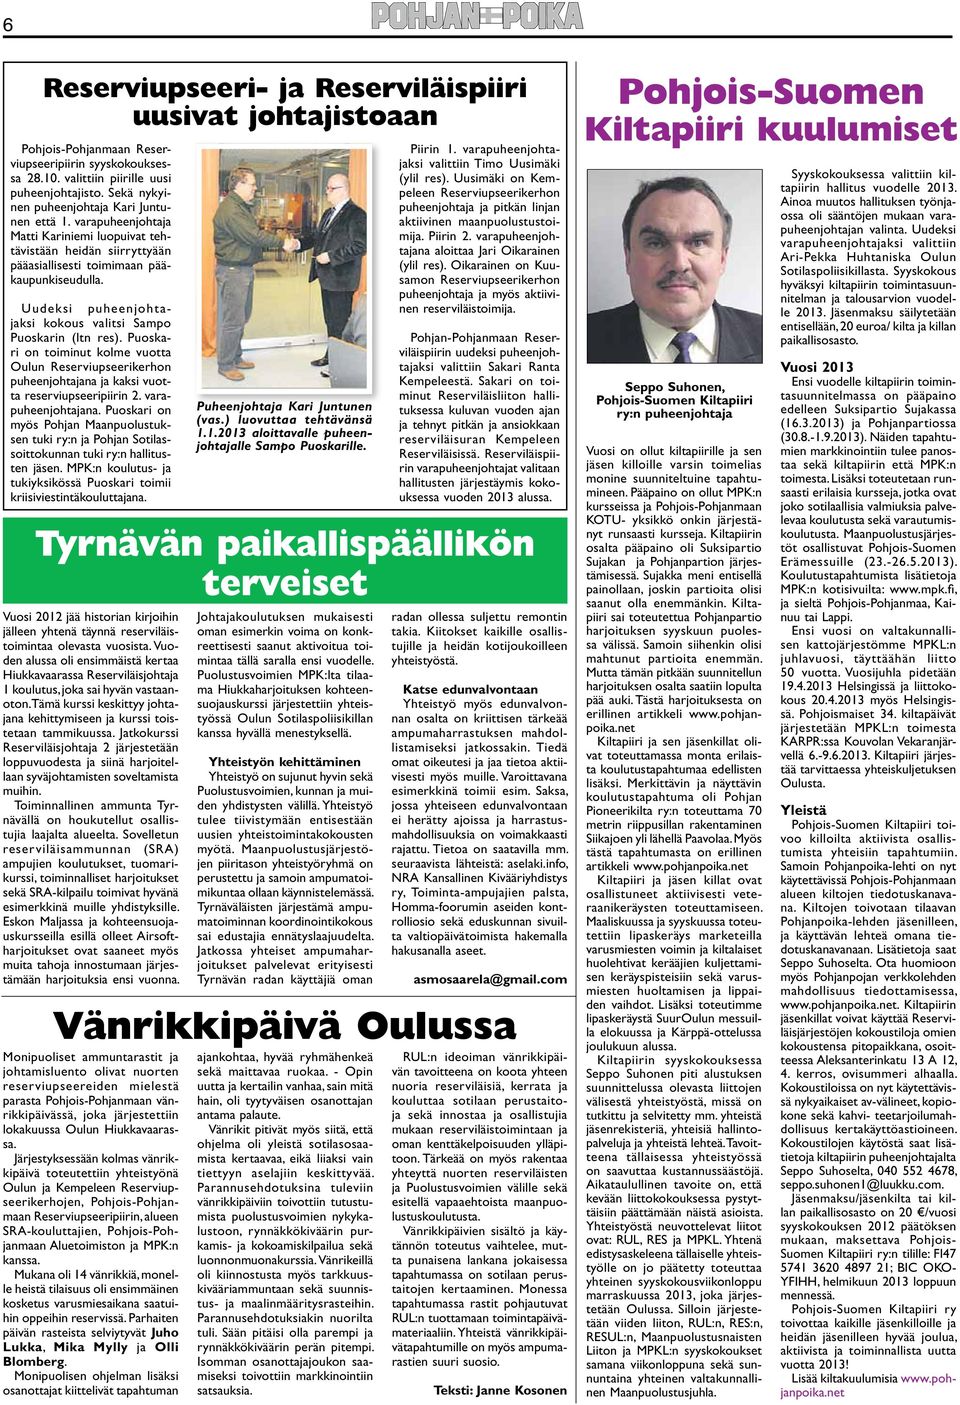 Puoskari on toiminut kolme vuotta Oulun Reserviupseerikerhon puheenjohtajana ja kaksi vuotta reserviupseeripiirin 2. varapuheenjohtajana.